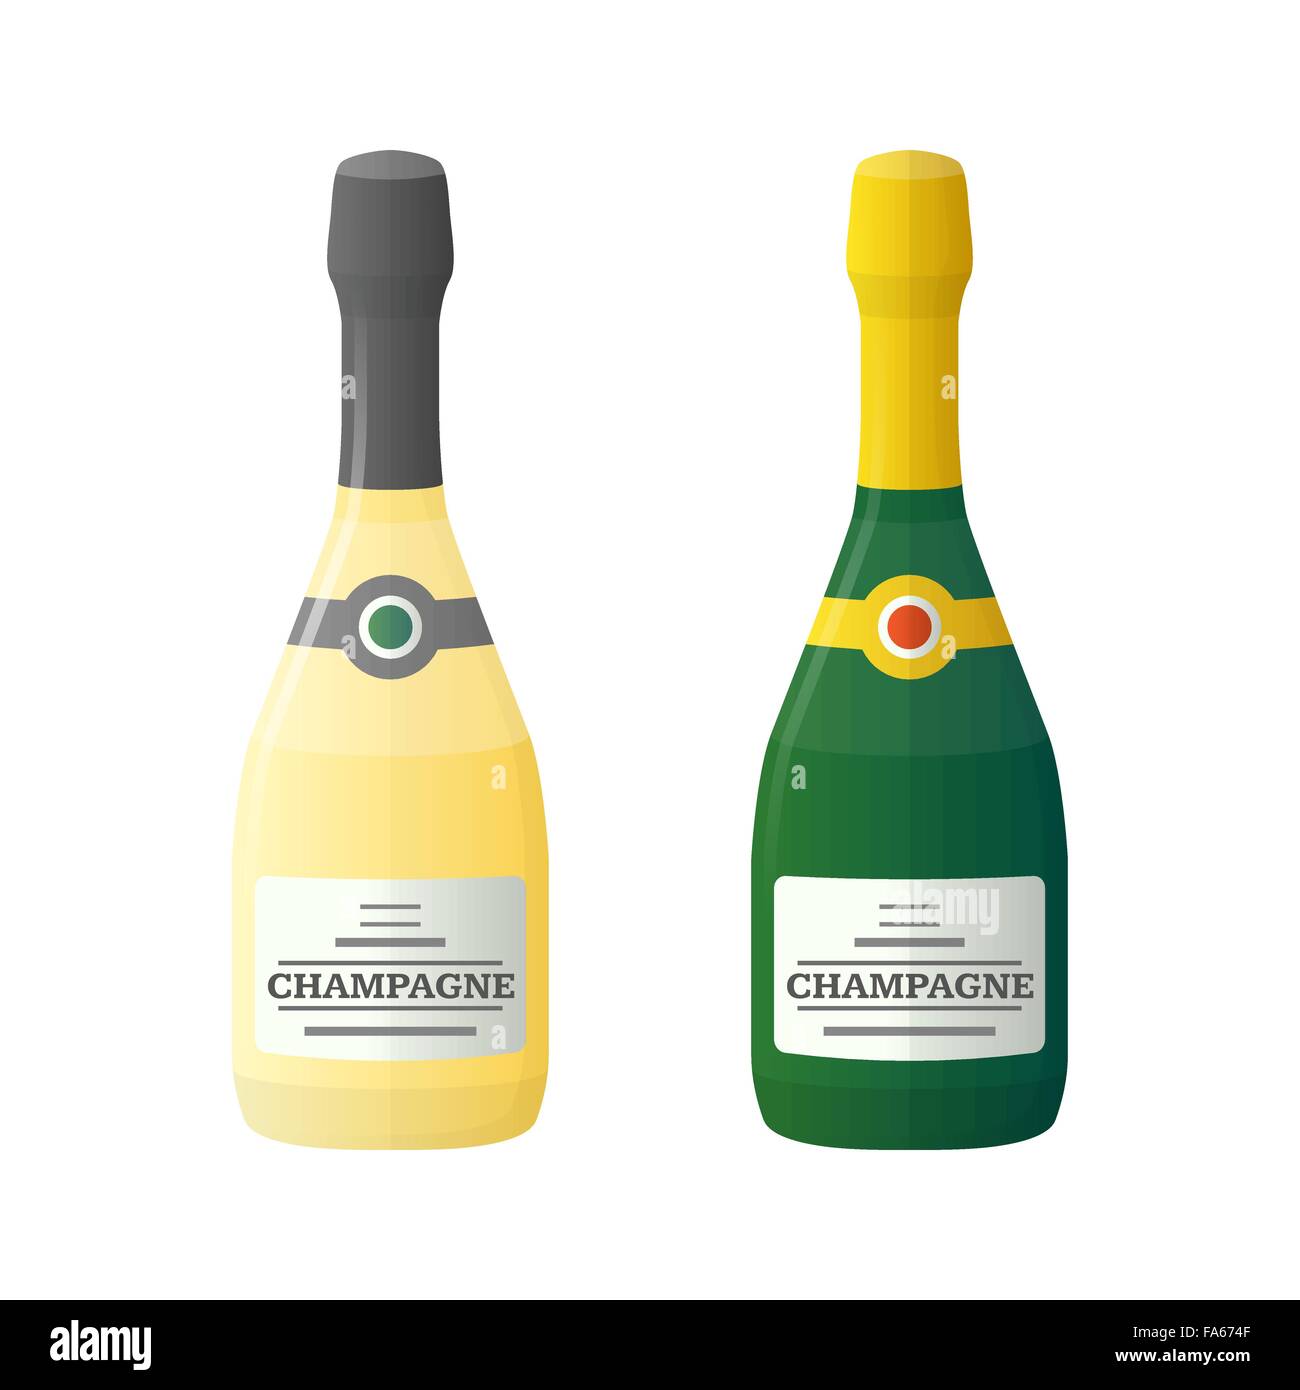 Vektor-Farbe flaches Design leichte dunkle Champagnerflaschen isoliert Illustration auf weißem Hintergrund Stock Vektor